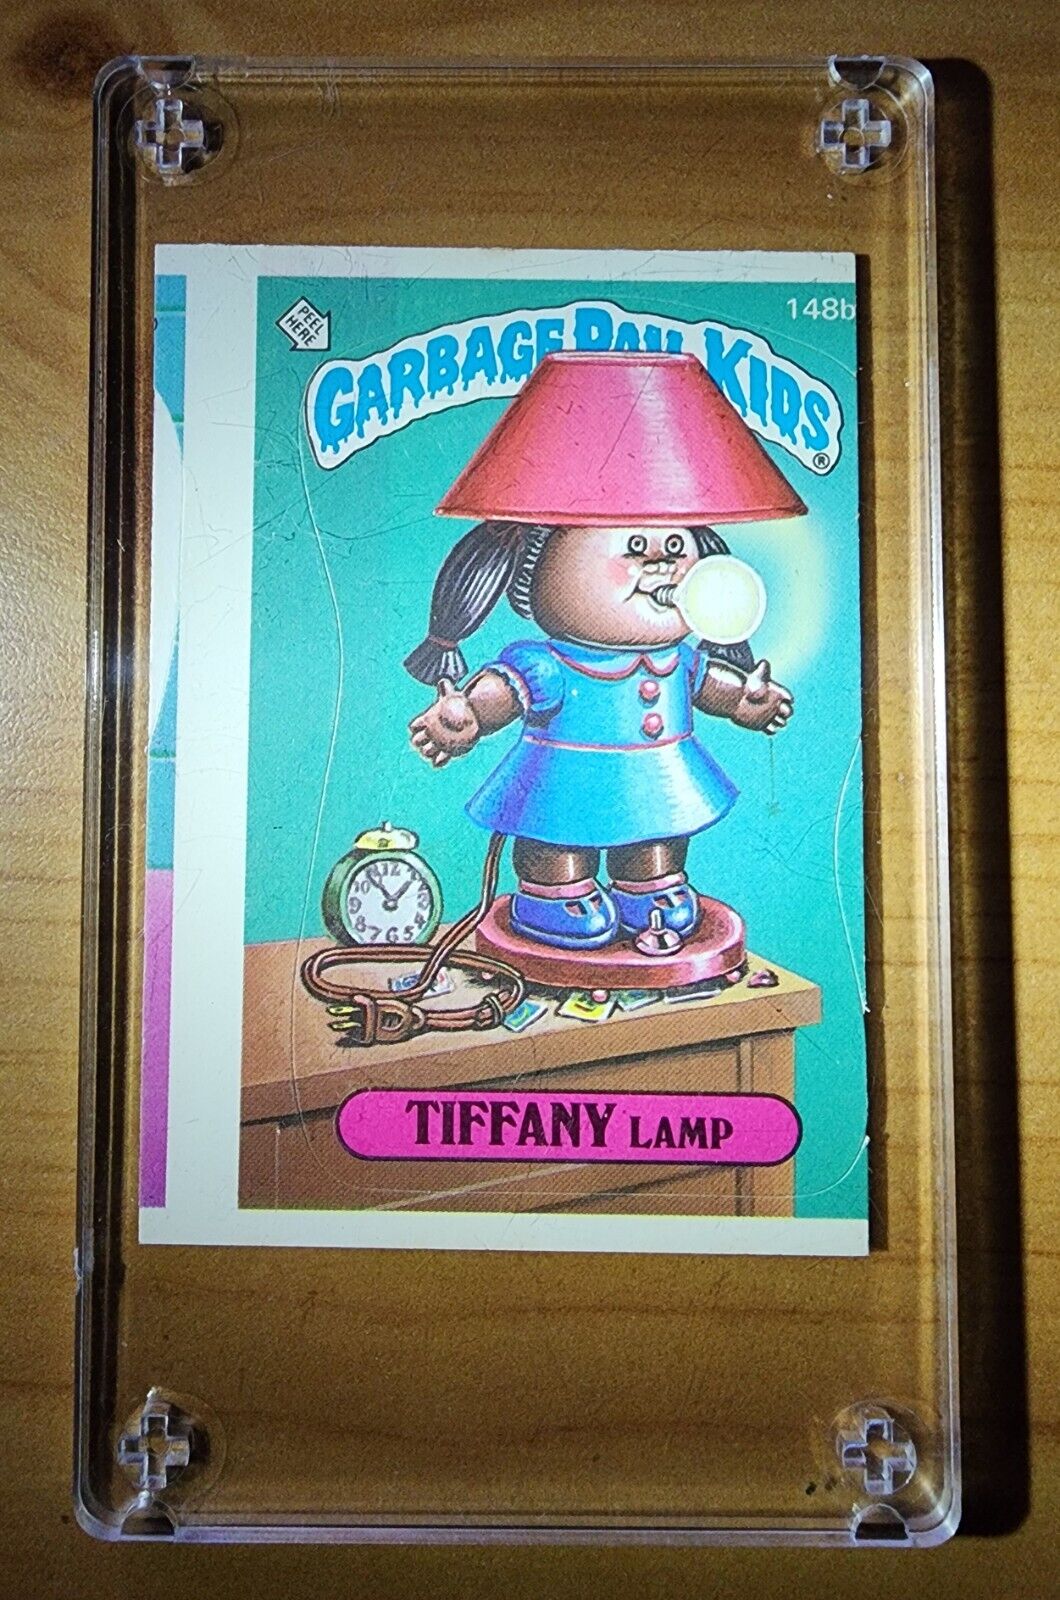 1986 Topps Garbage Pail Kids Tiffany Lamp 148b **RARE MISCUT ERROR**